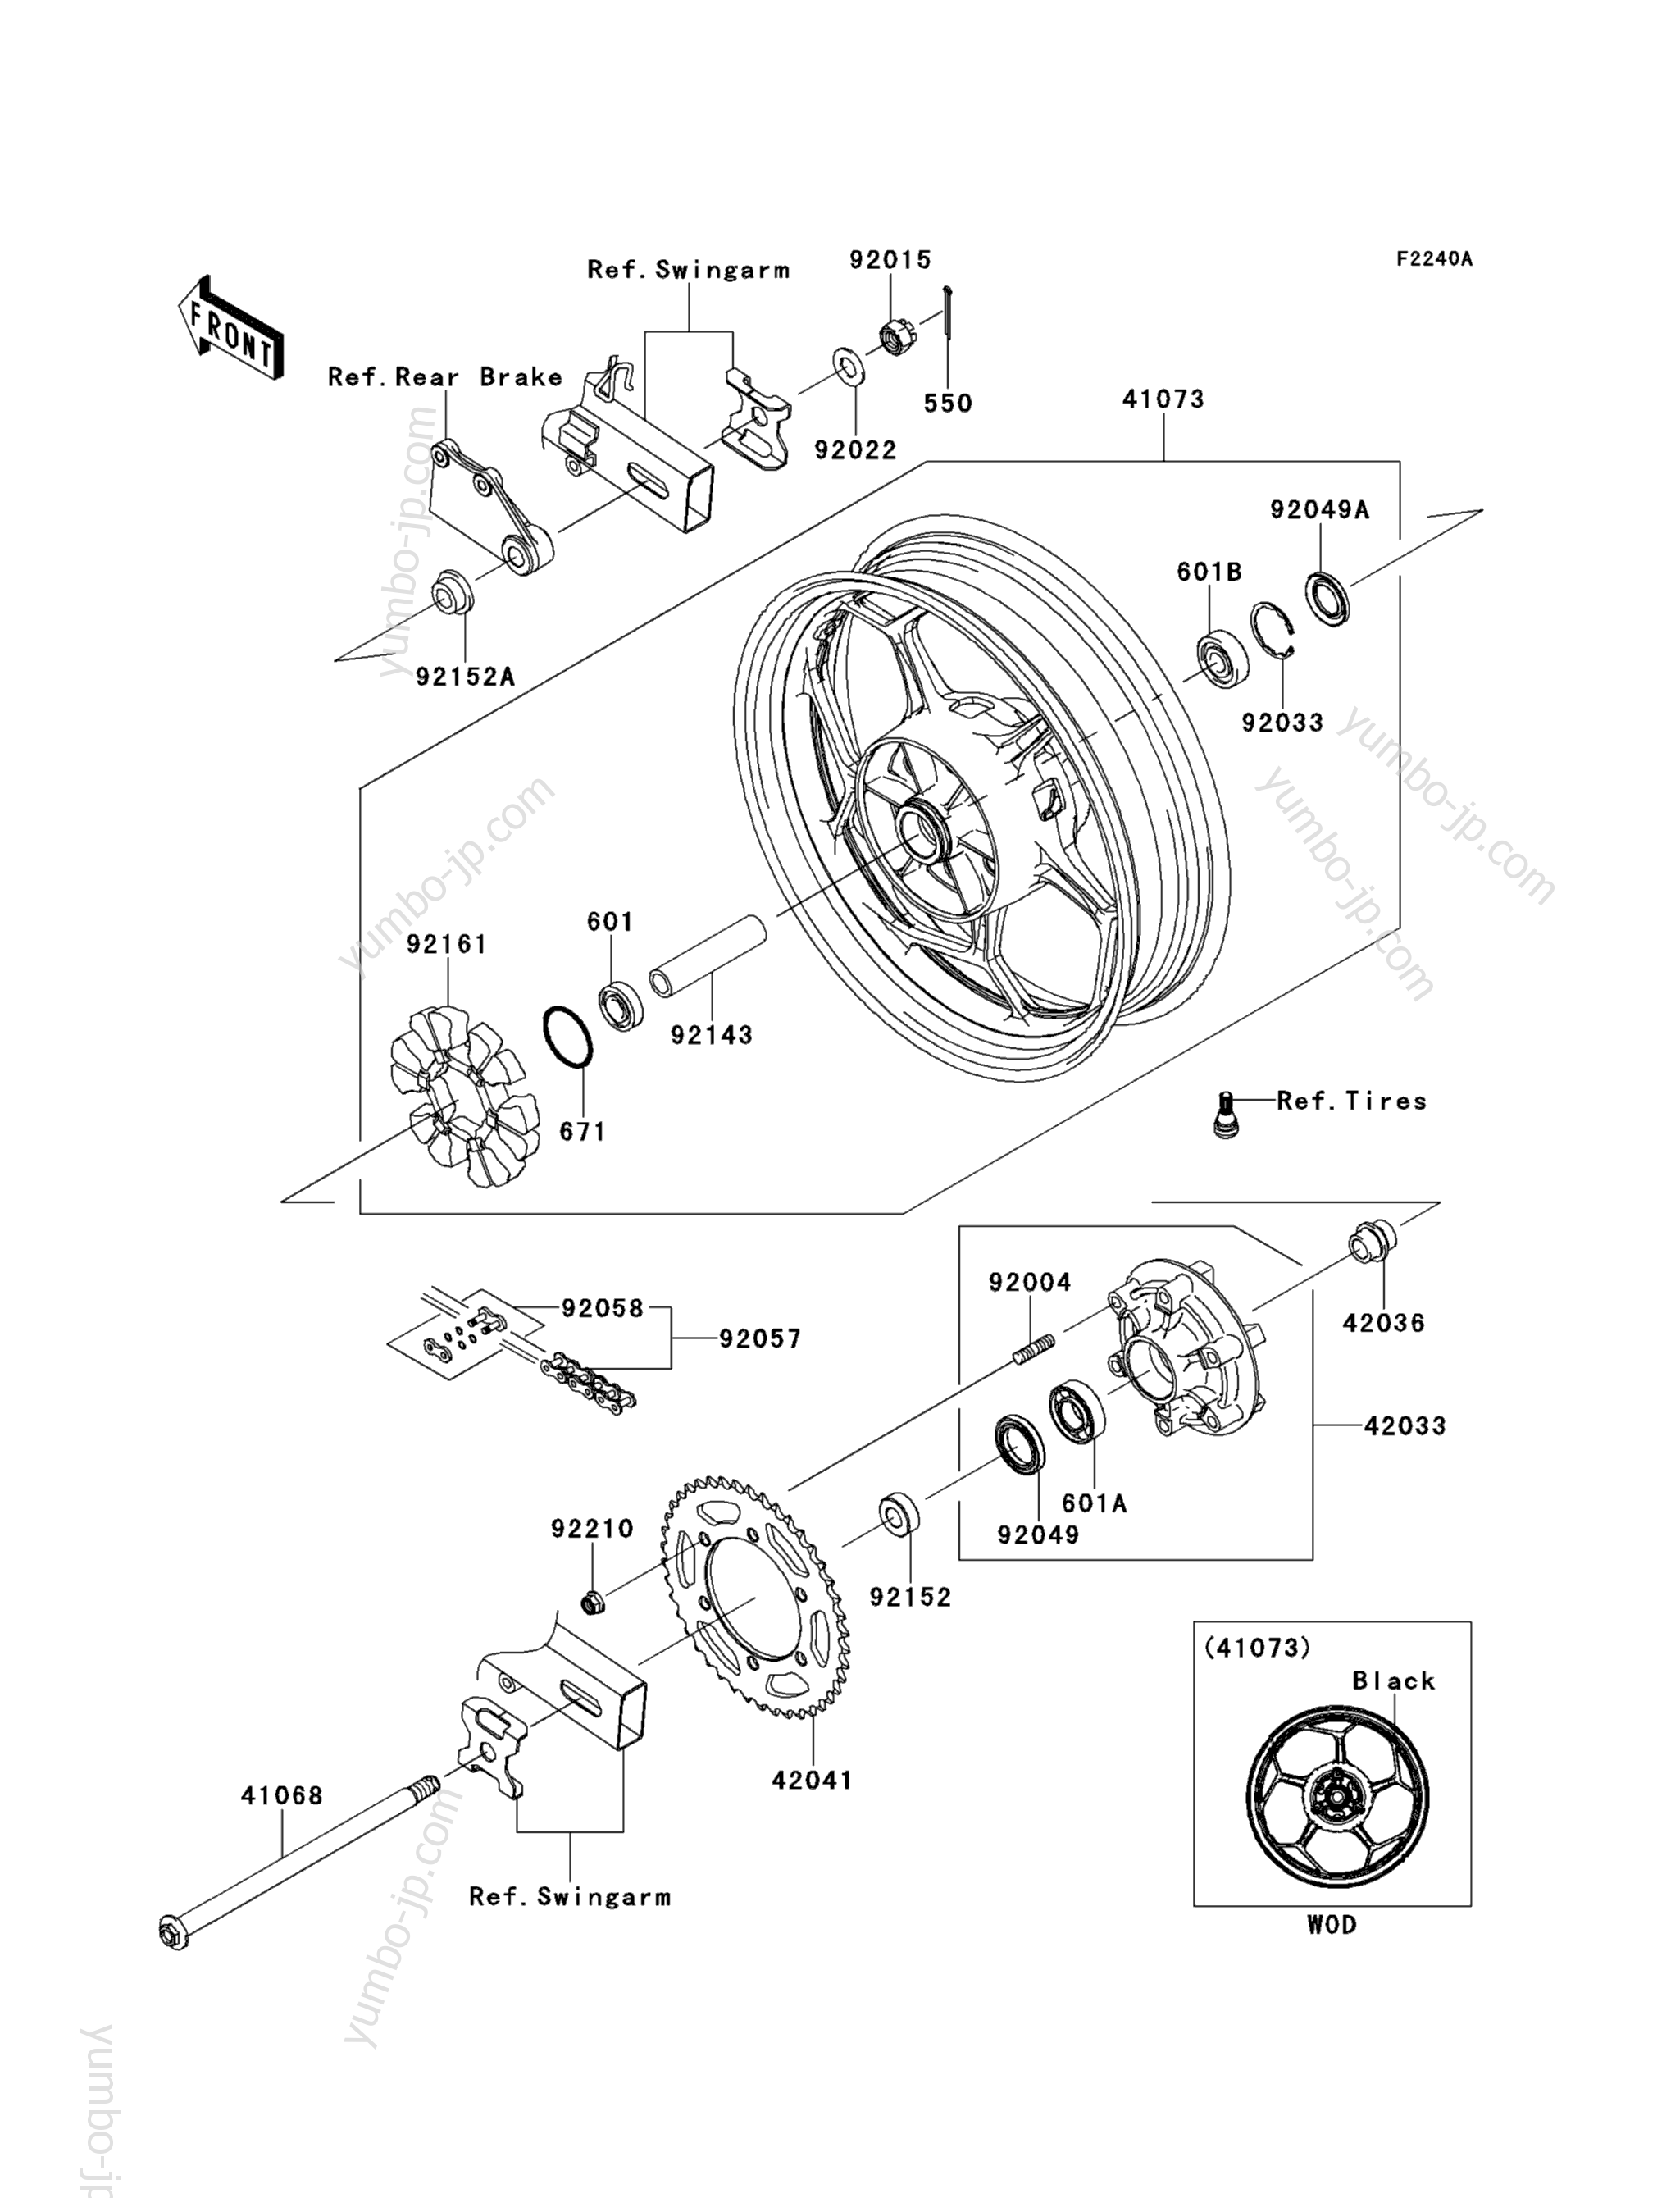 Rear Wheel/Chain (ADFA)(CA,US) for motorcycles KAWASAKI NINJA 300 (EX300ADFA) 2013 year